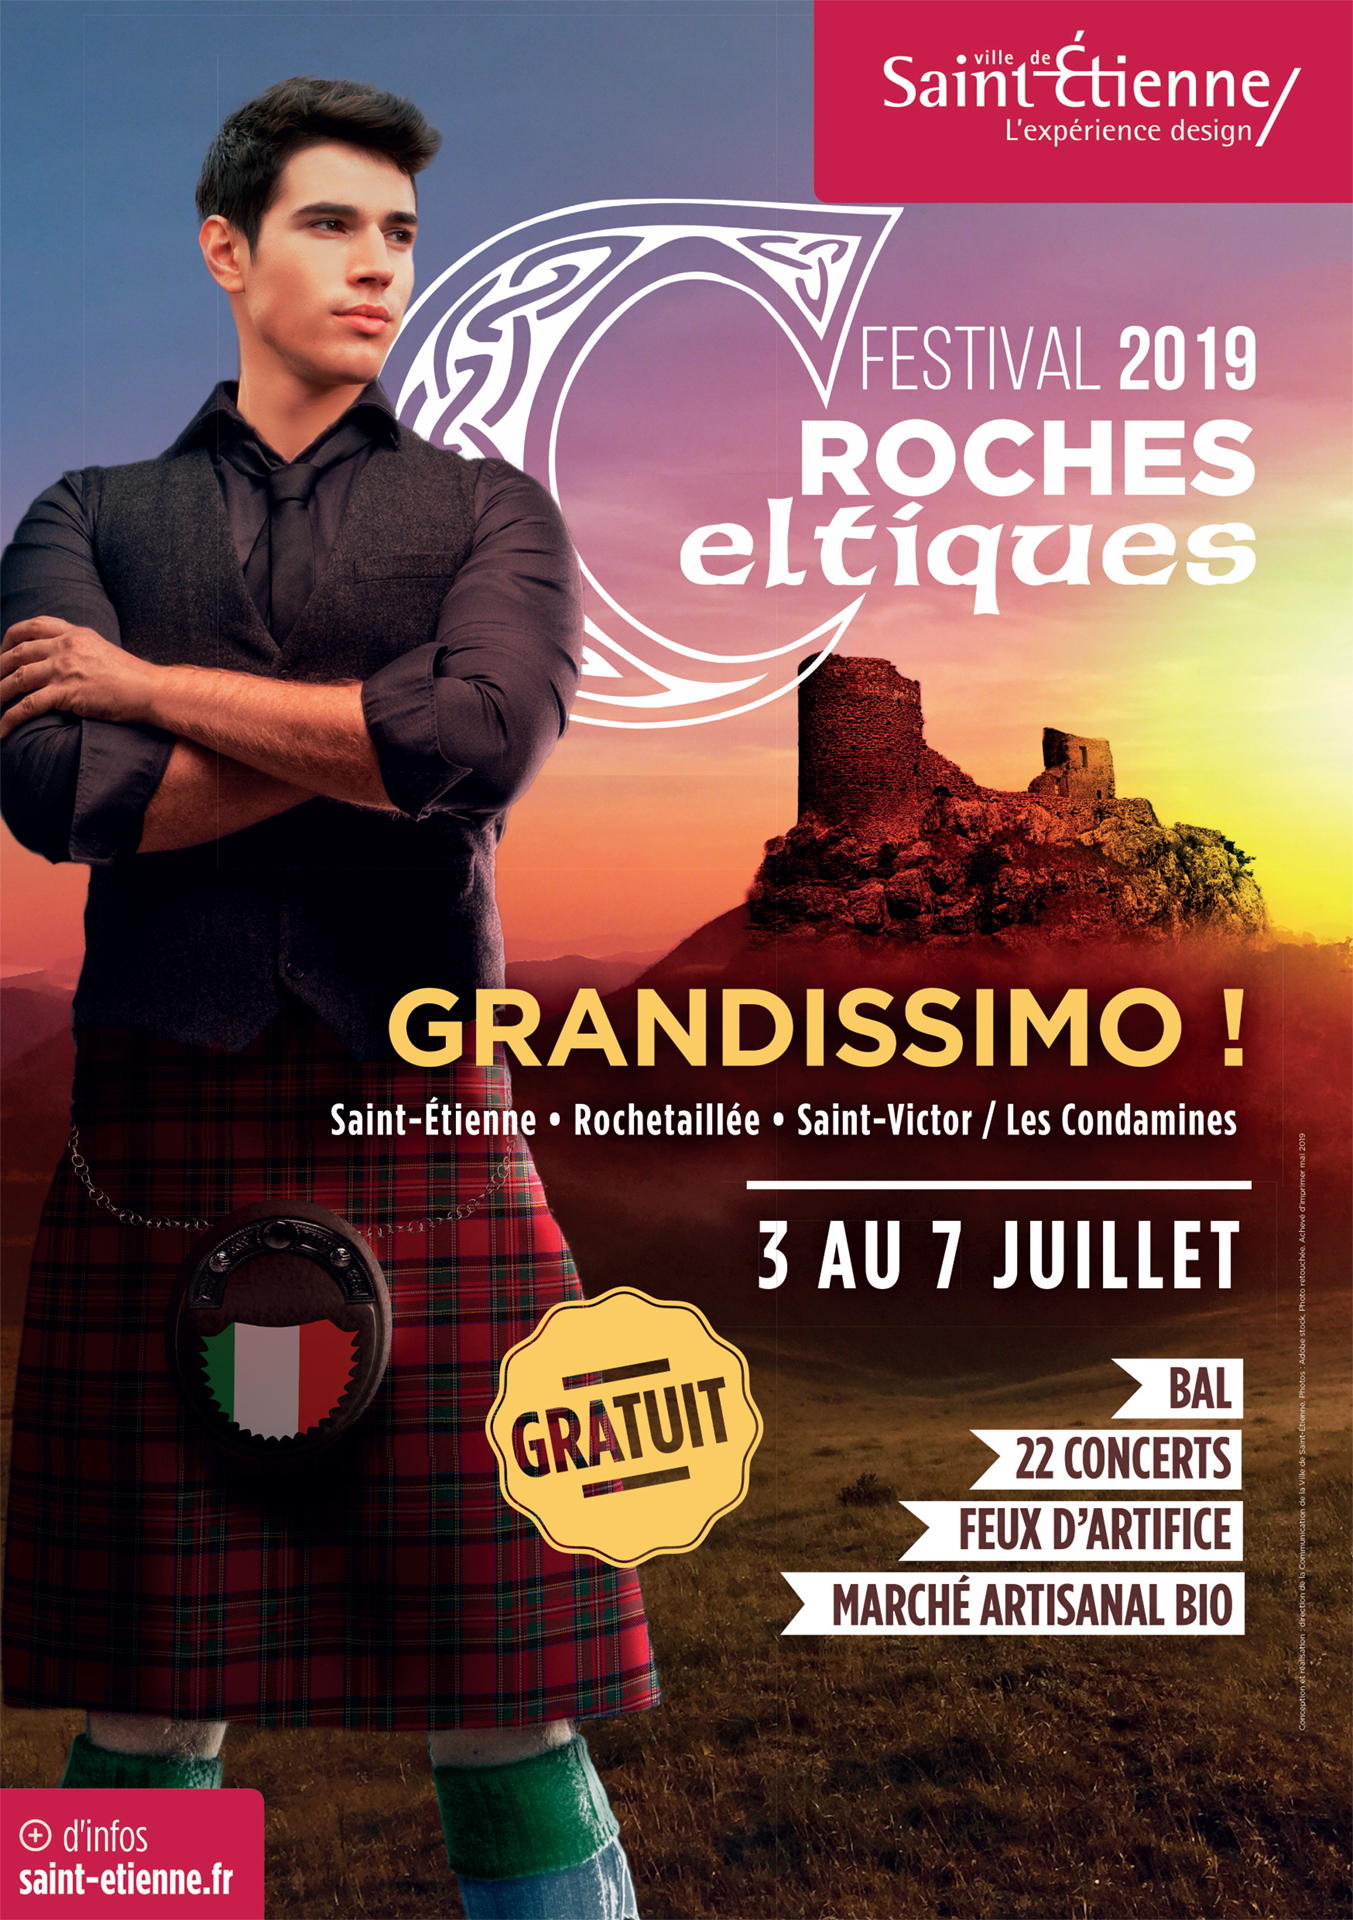 Festival Roches celtiques du 3 au 7 juillet 2019 - Saint-Etienne